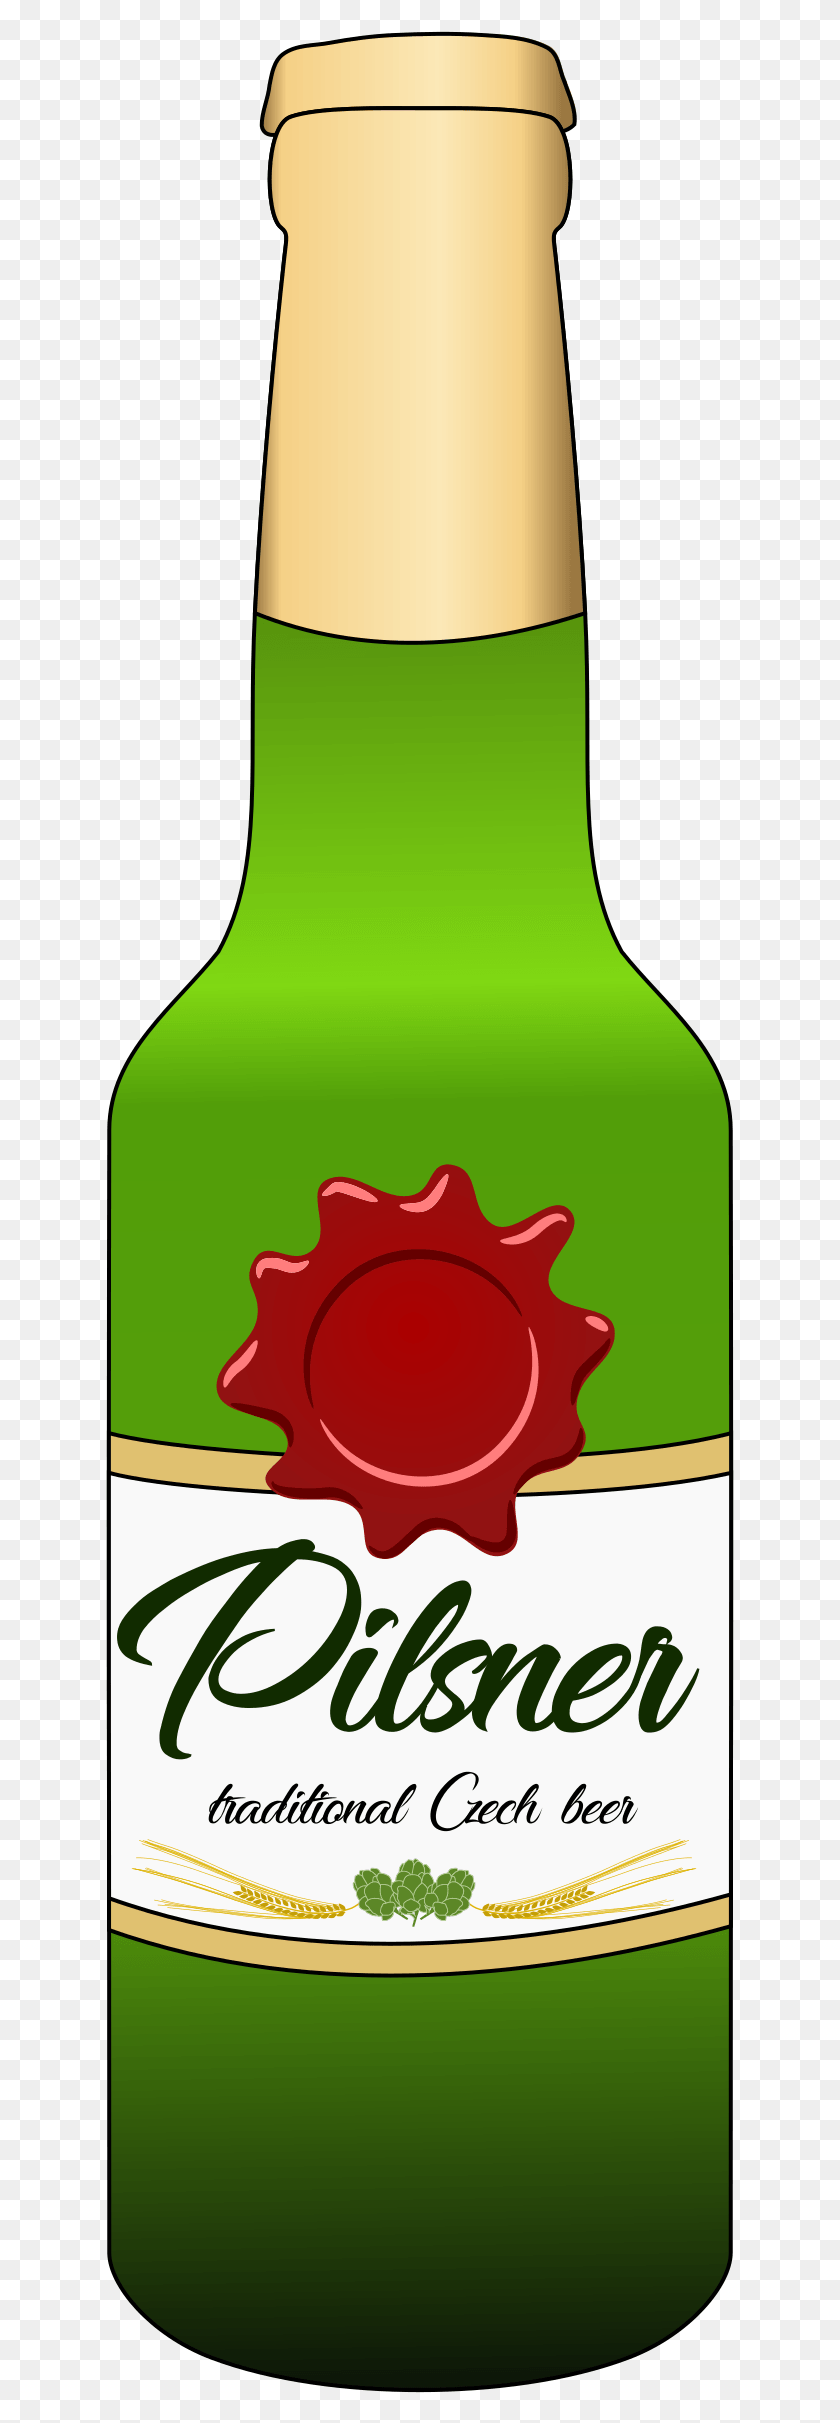 629x2363 This Free Icons Design Of Pilsner Beer Bottle, Beverage, Drink, Bottle HD PNG Download